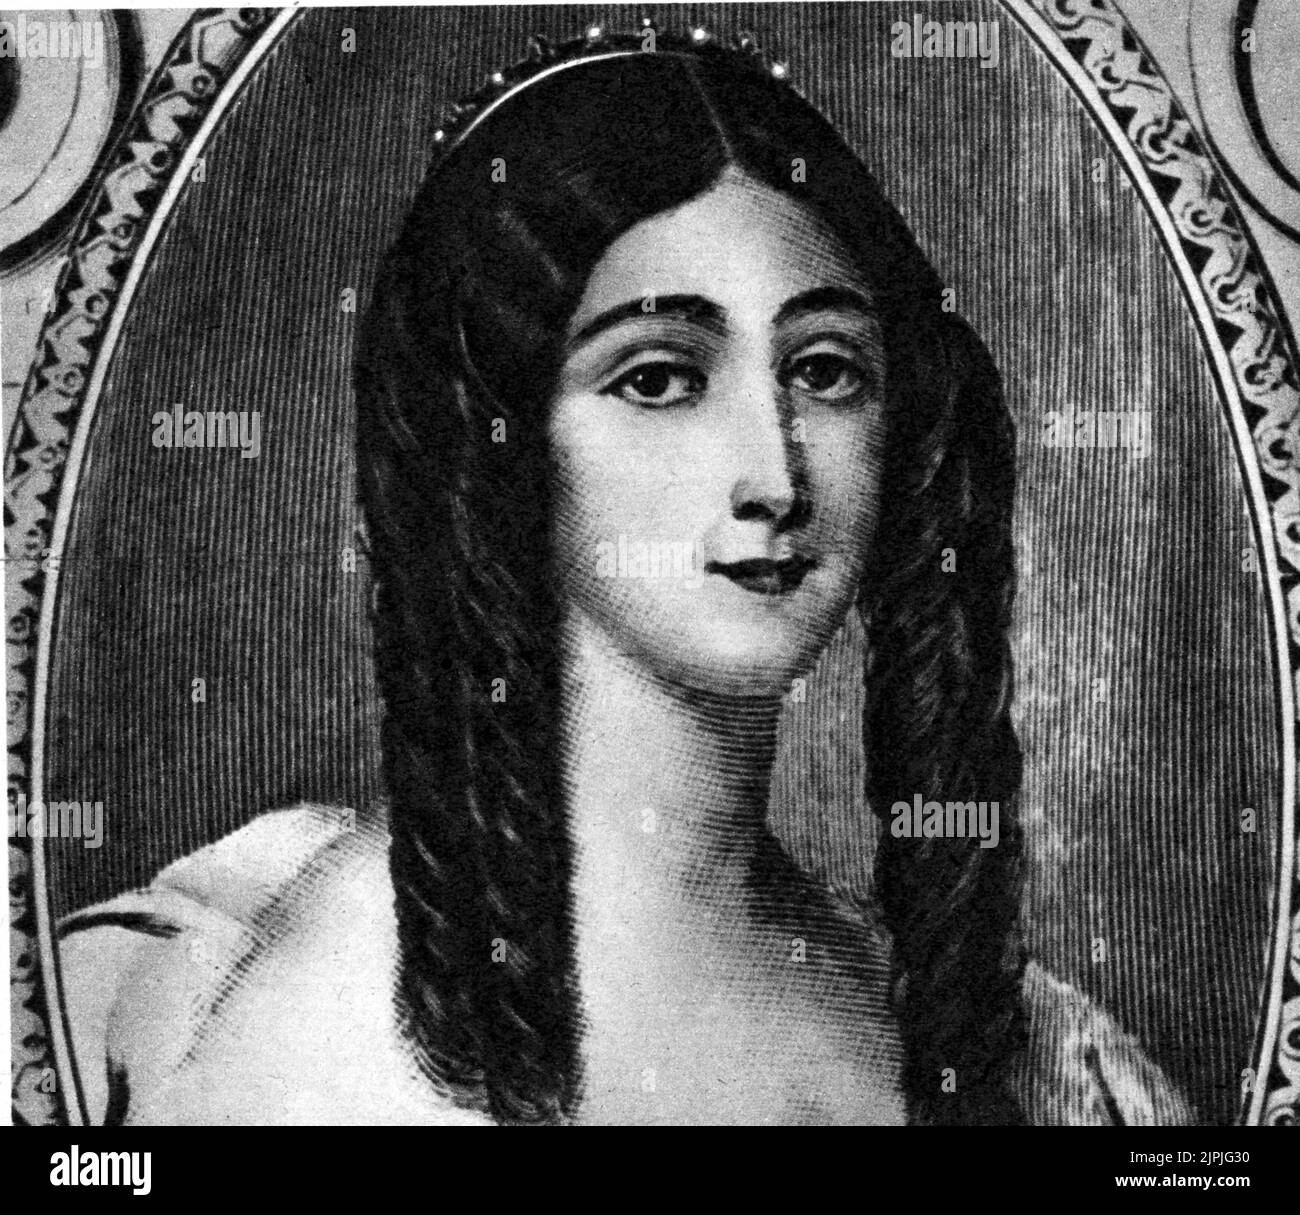 1845 , FRANCIA : ALFONSINE PLESSIS ( grabado del retrato original del pintor francés Viénot ), nacido el día 15 de enero de 1824 en Nonant , muerto el 3 de febrero de 1847. El VERDADERO FEMME aux CAMELIAS Marguerite Gauthier ixpied por EL escritor francés ALEXANDRE DUMAS Fils - SIGNORA DELLE CAMELIE - retrato grabado - ritratto - incisione - CORTIGIANA - PROSTITUTA - prostituta ---- Archivio GBB Foto de stock